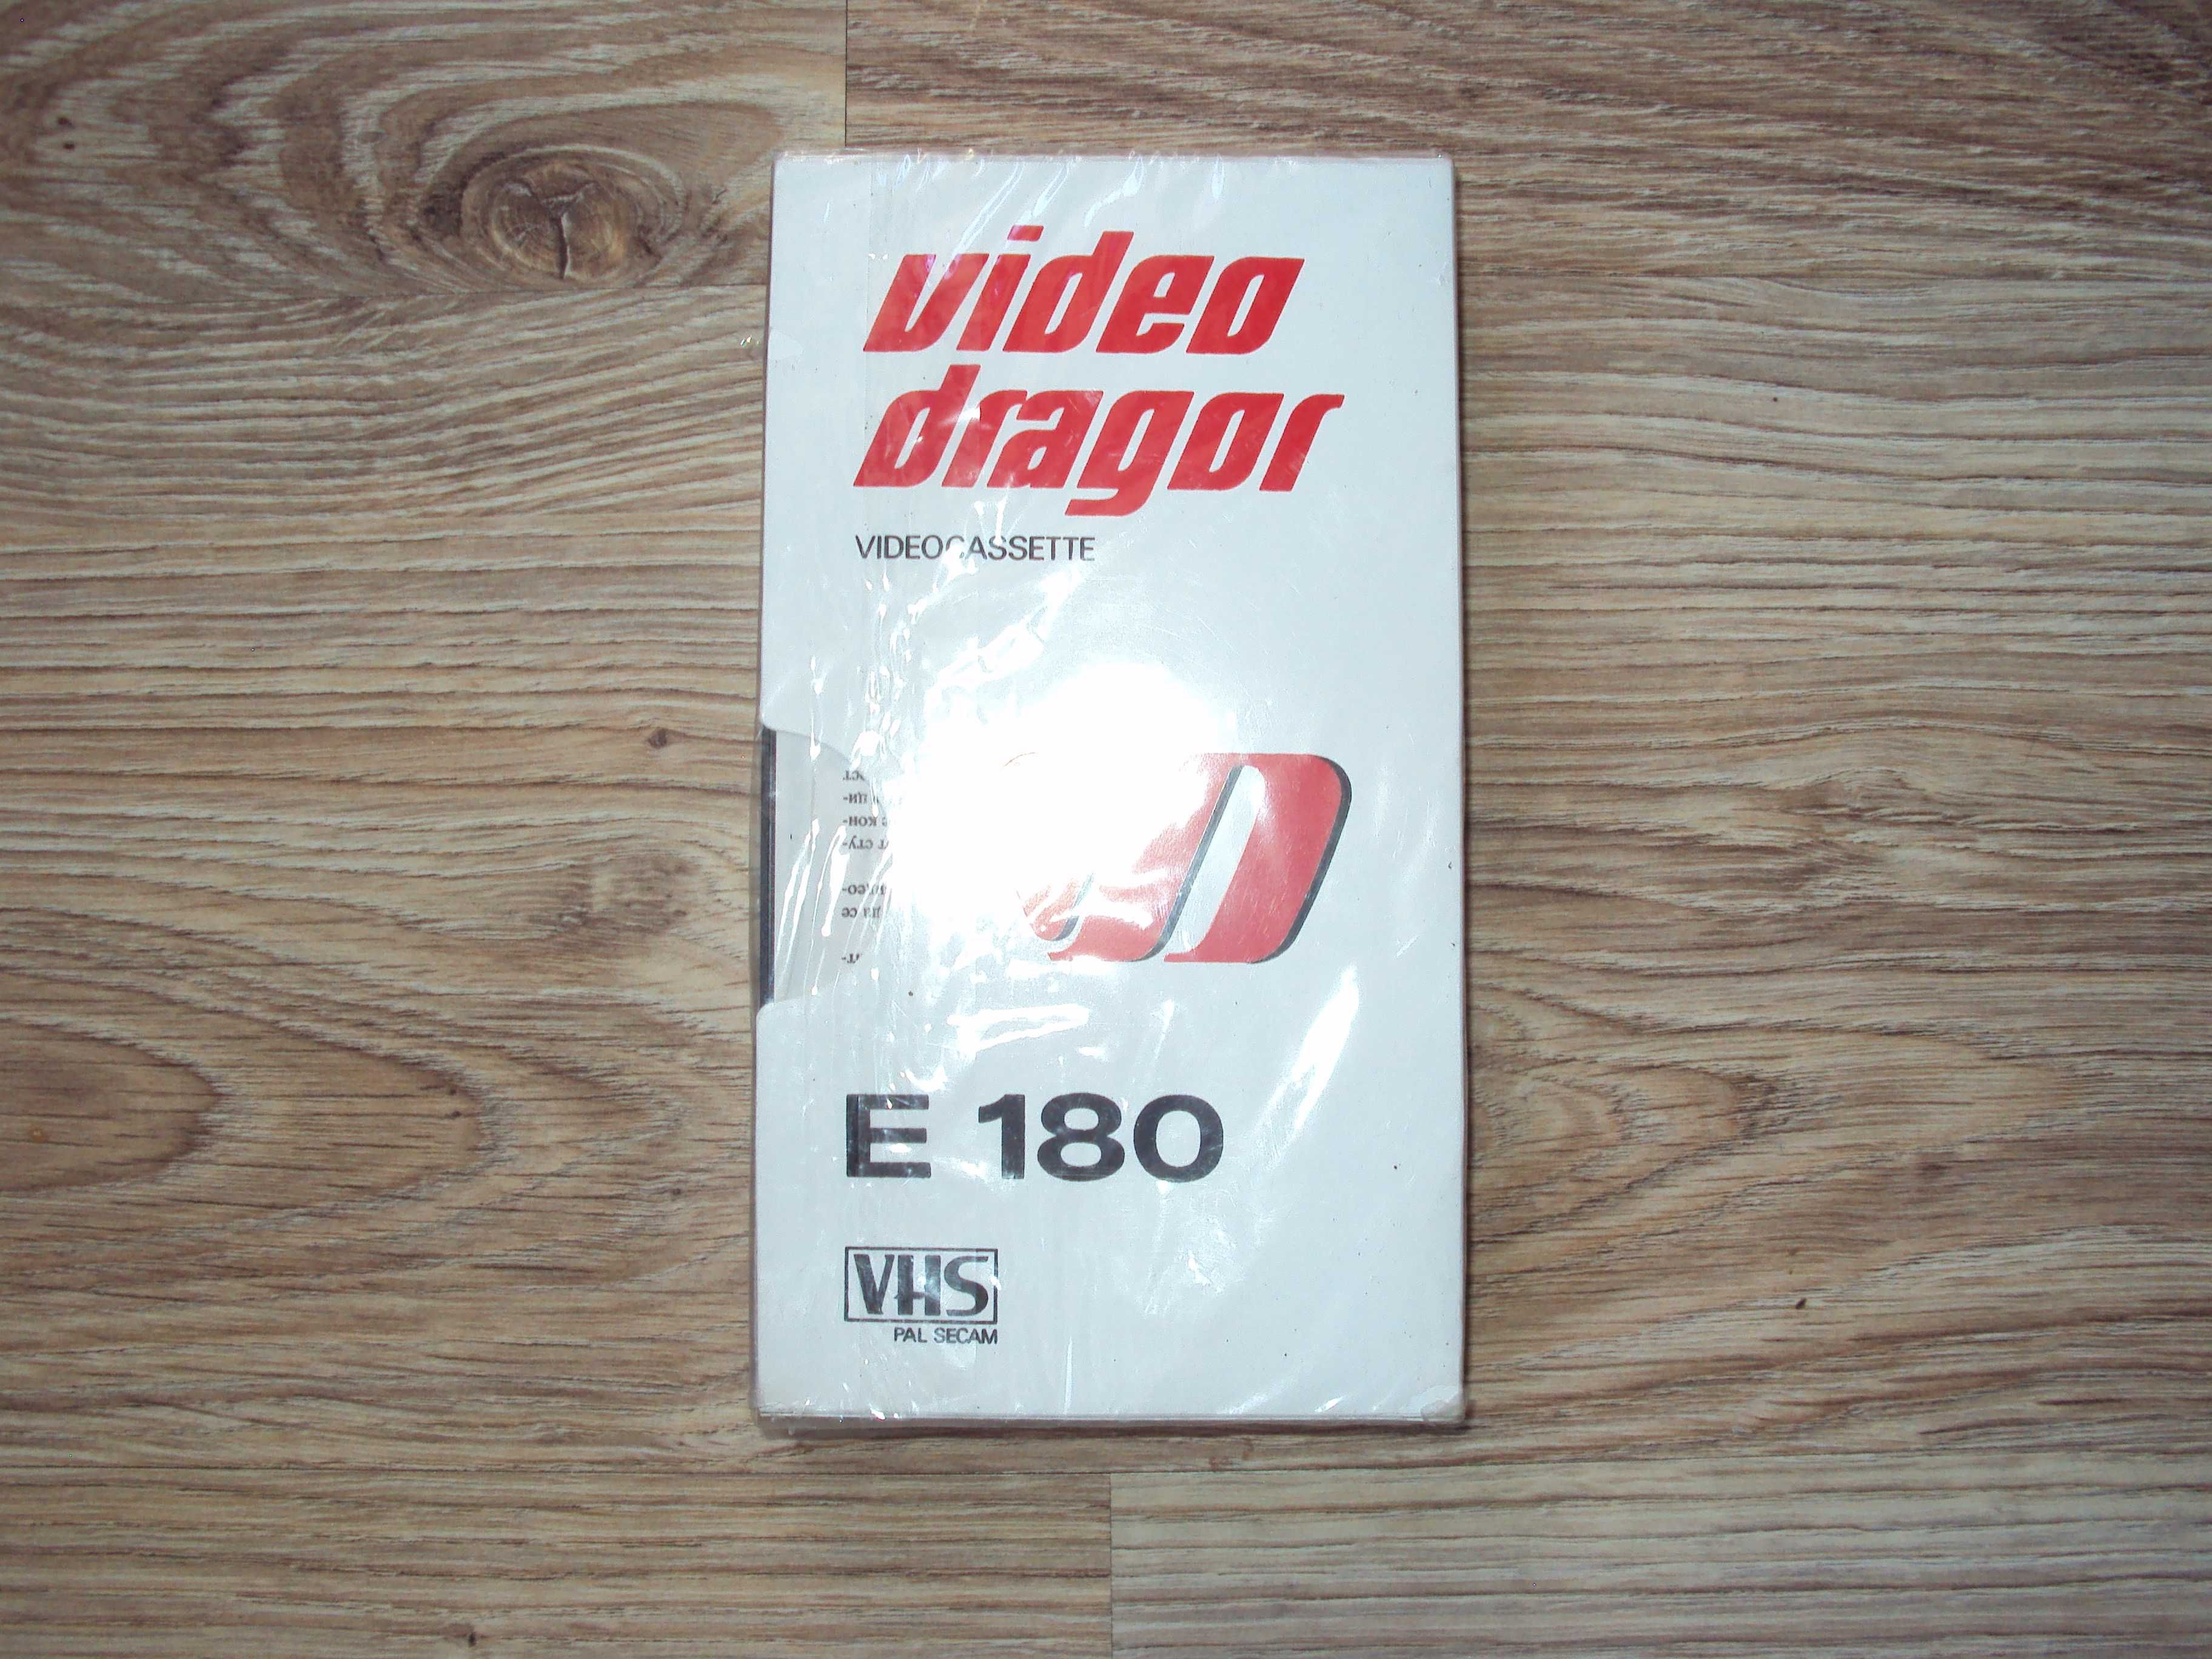 1987 Българска запечатана видео касета ДРАГОР VHS 180 ЗИН Пазарджик